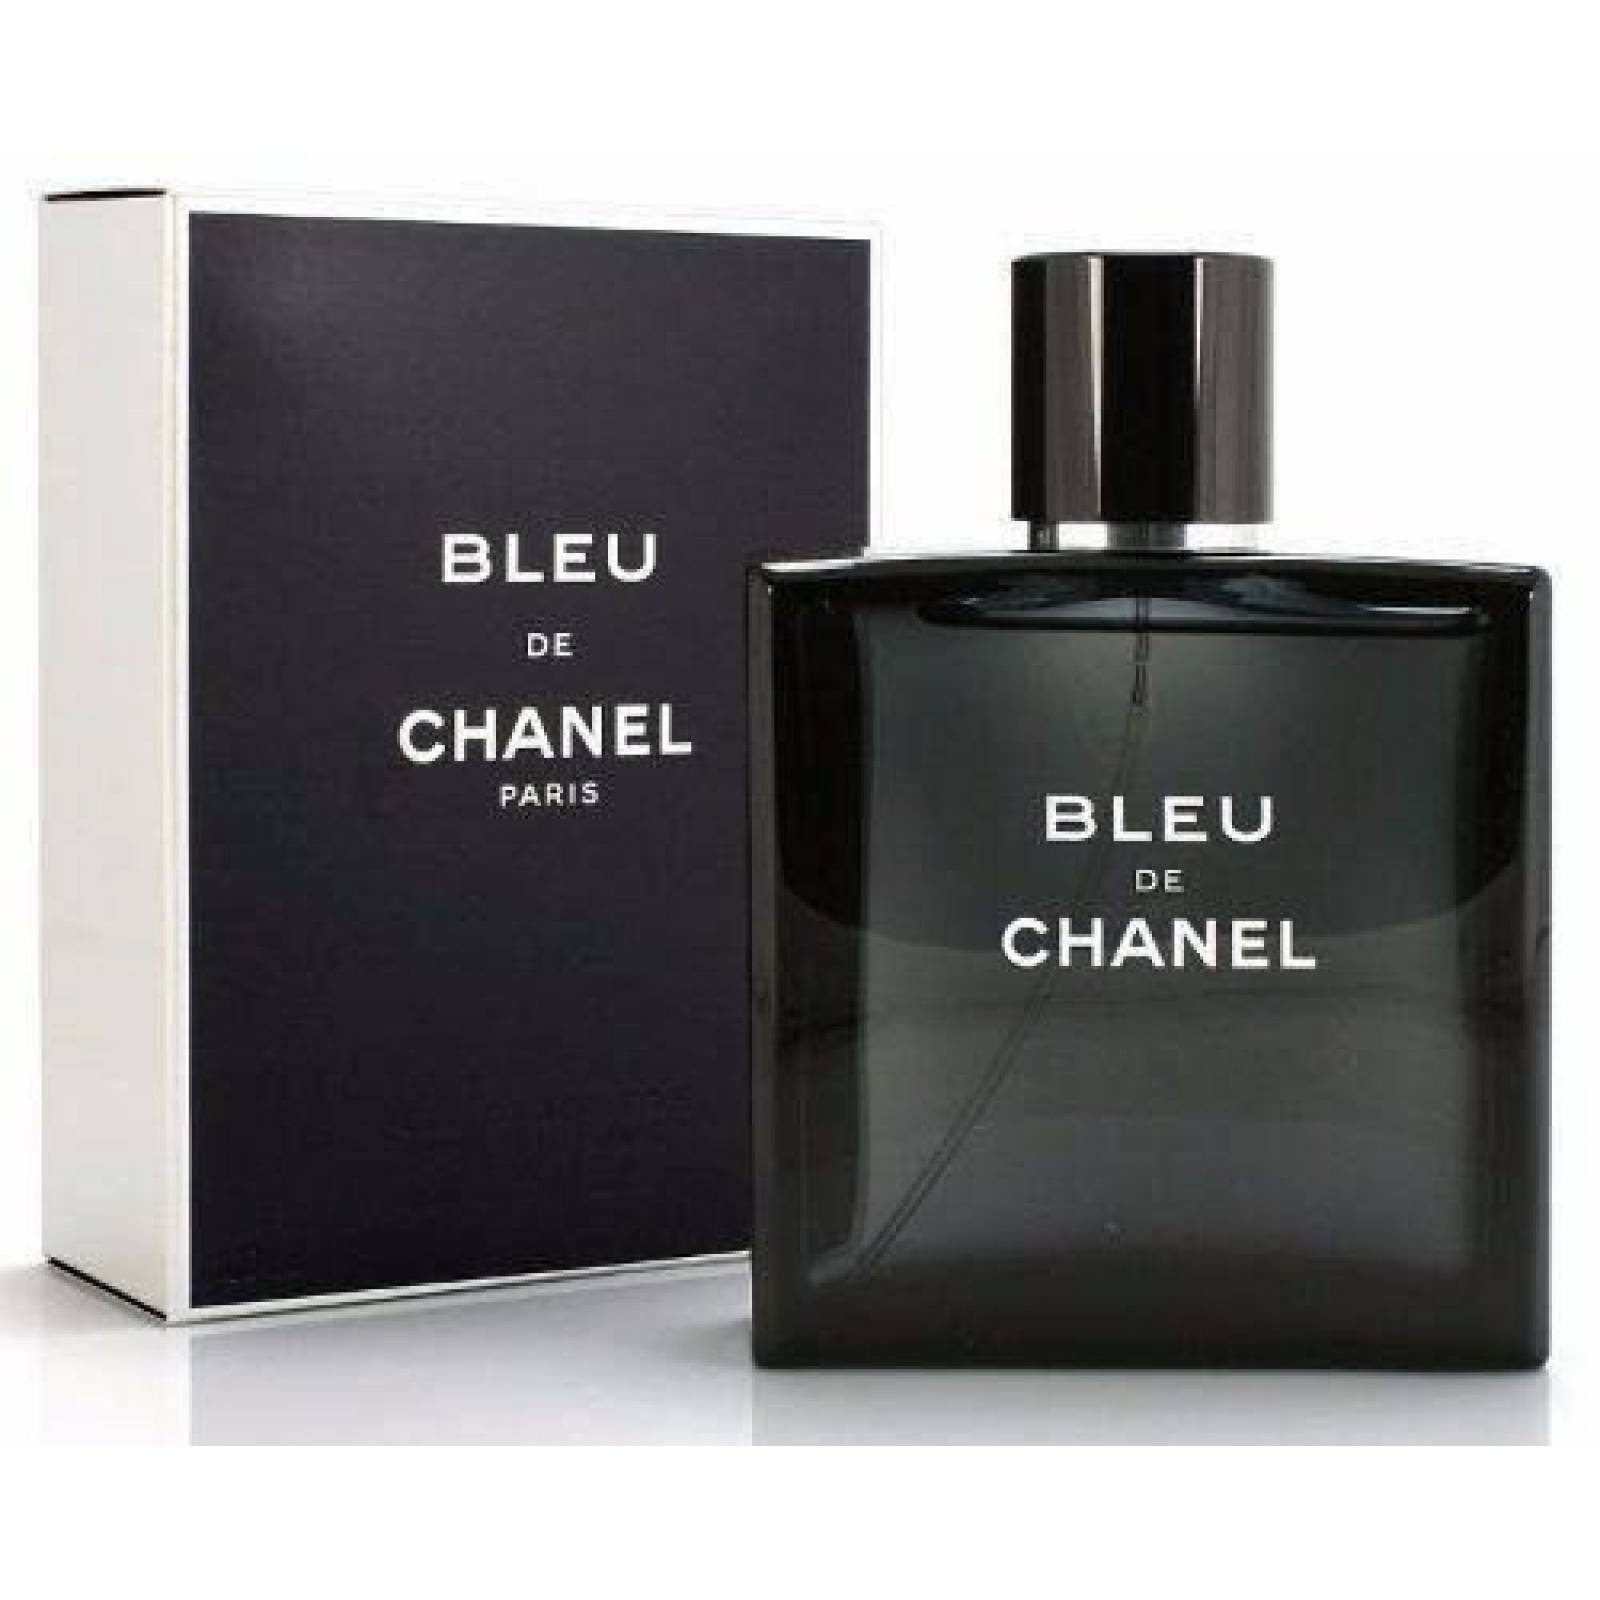 Chanel Bleu Caballero Ml Chanel Spray Perfume Original